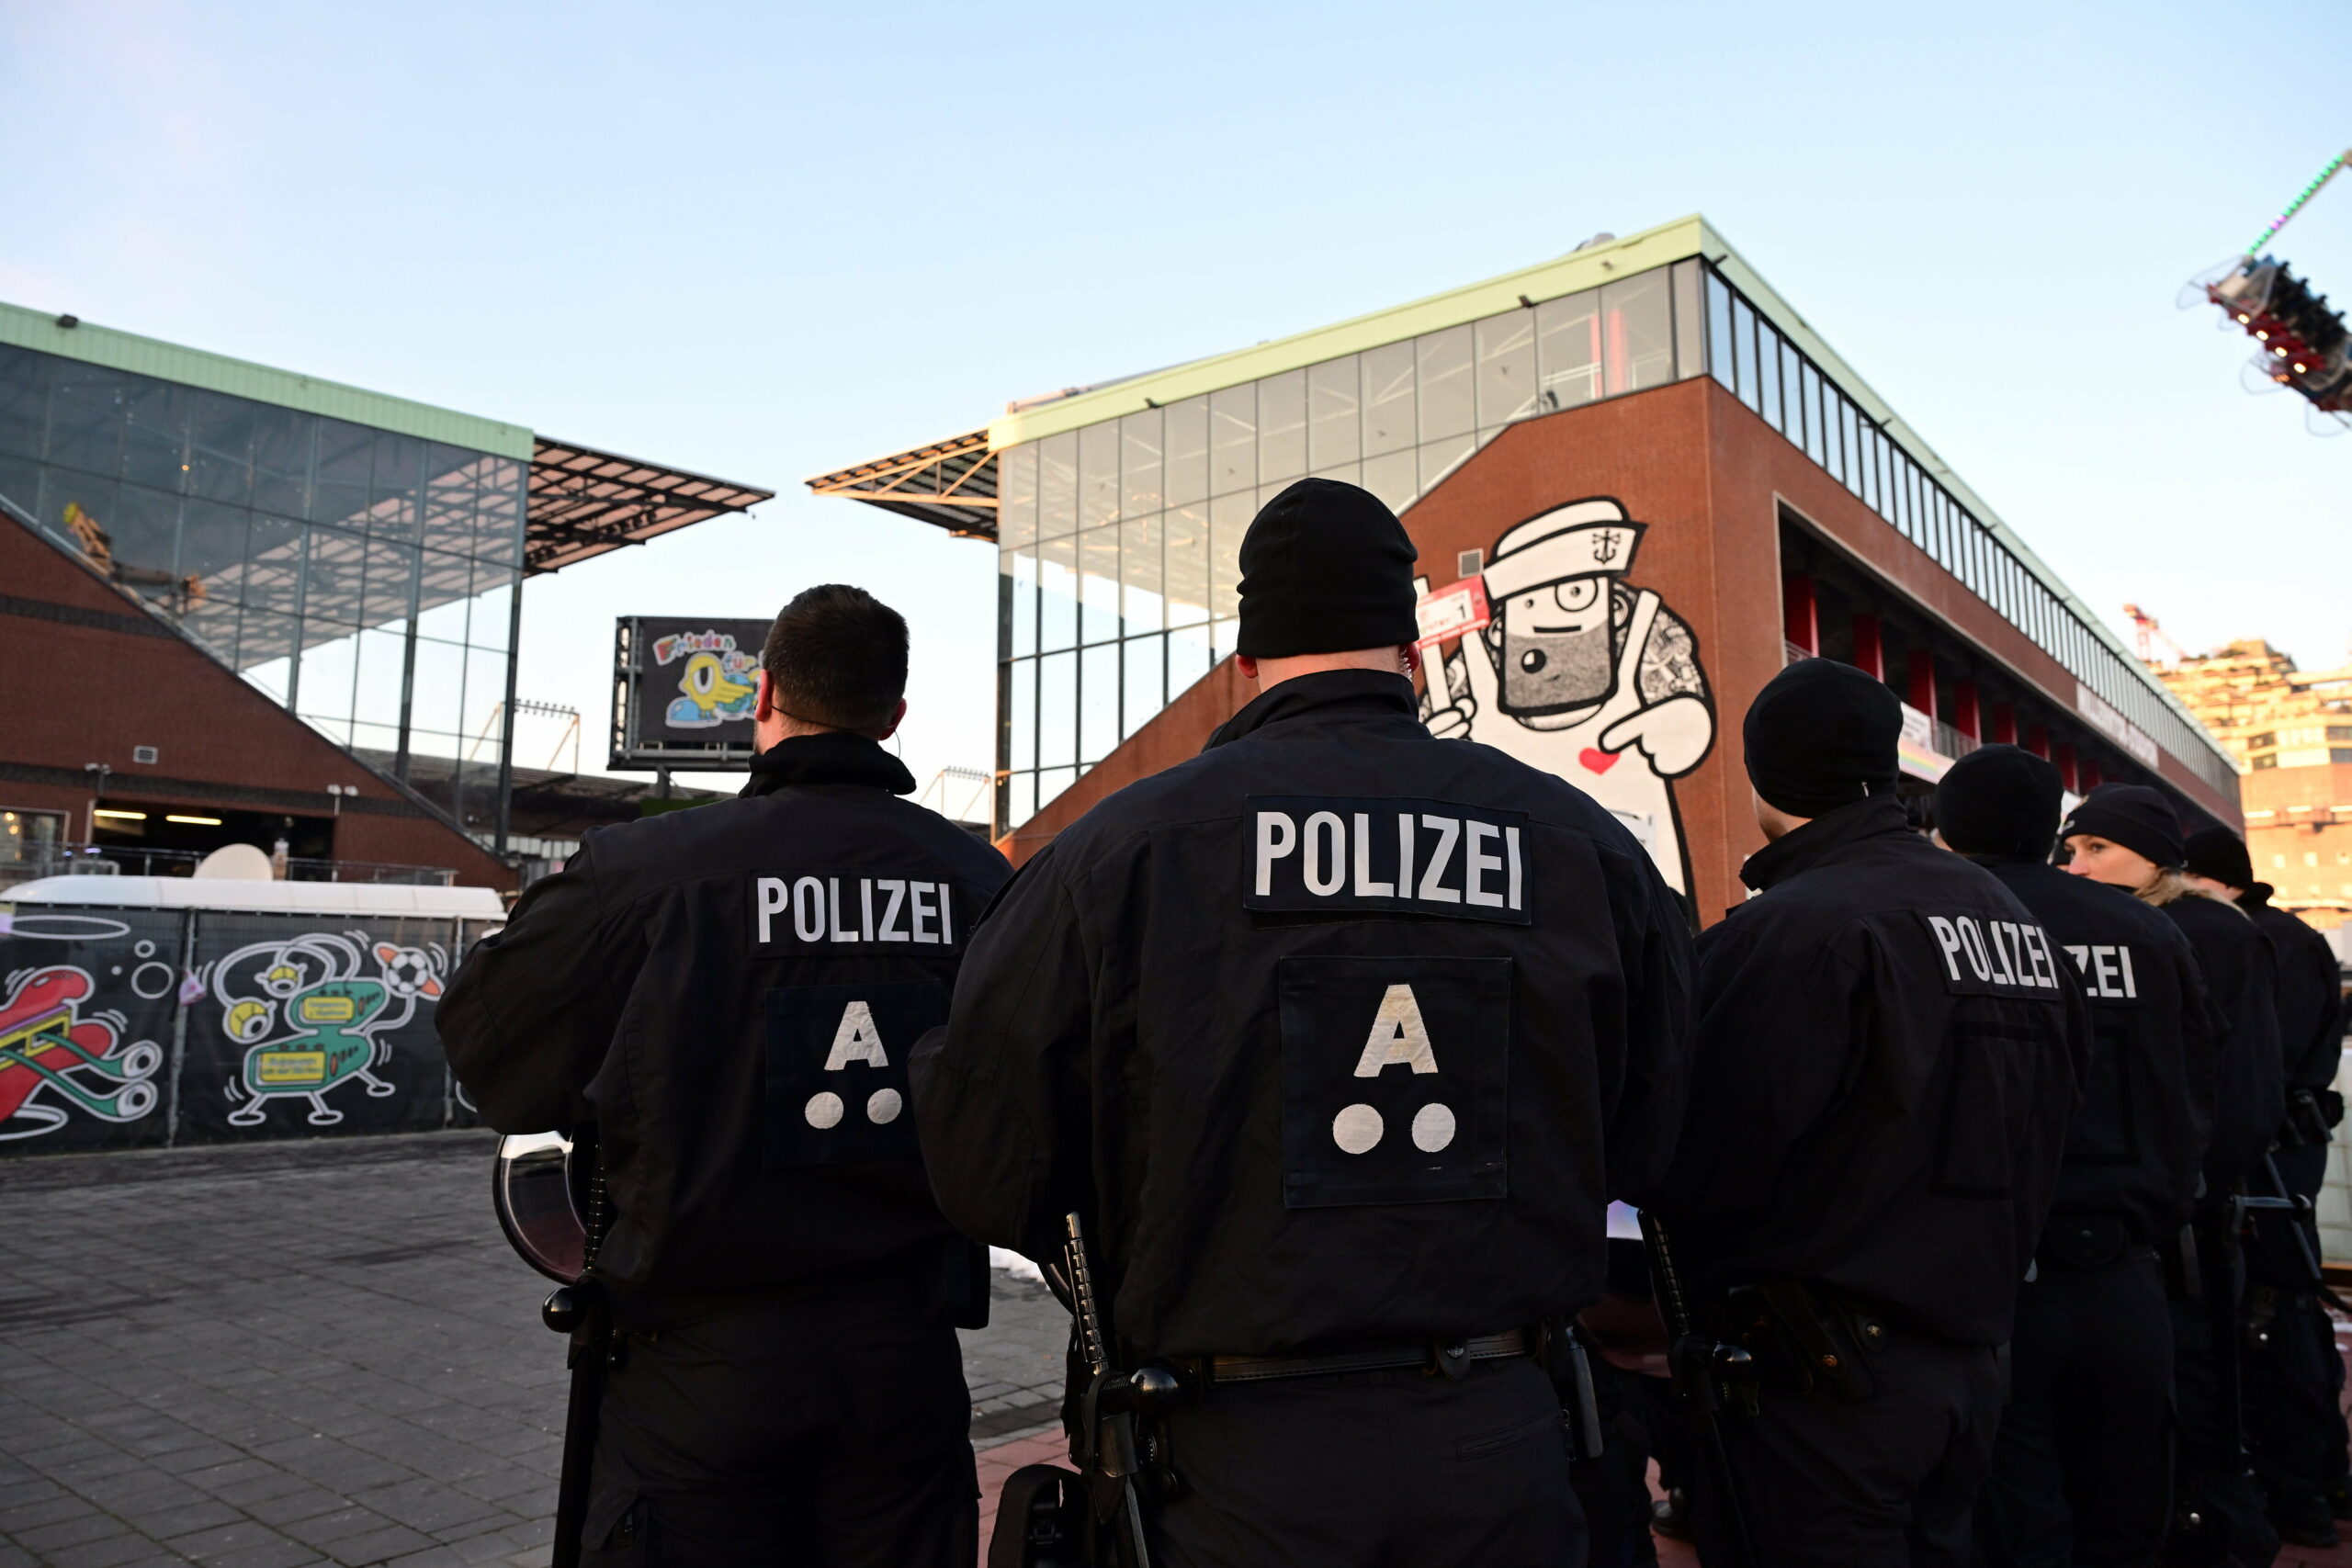 St. Pauli-Fans und die Polizei - ein schwieriges Verhältnis